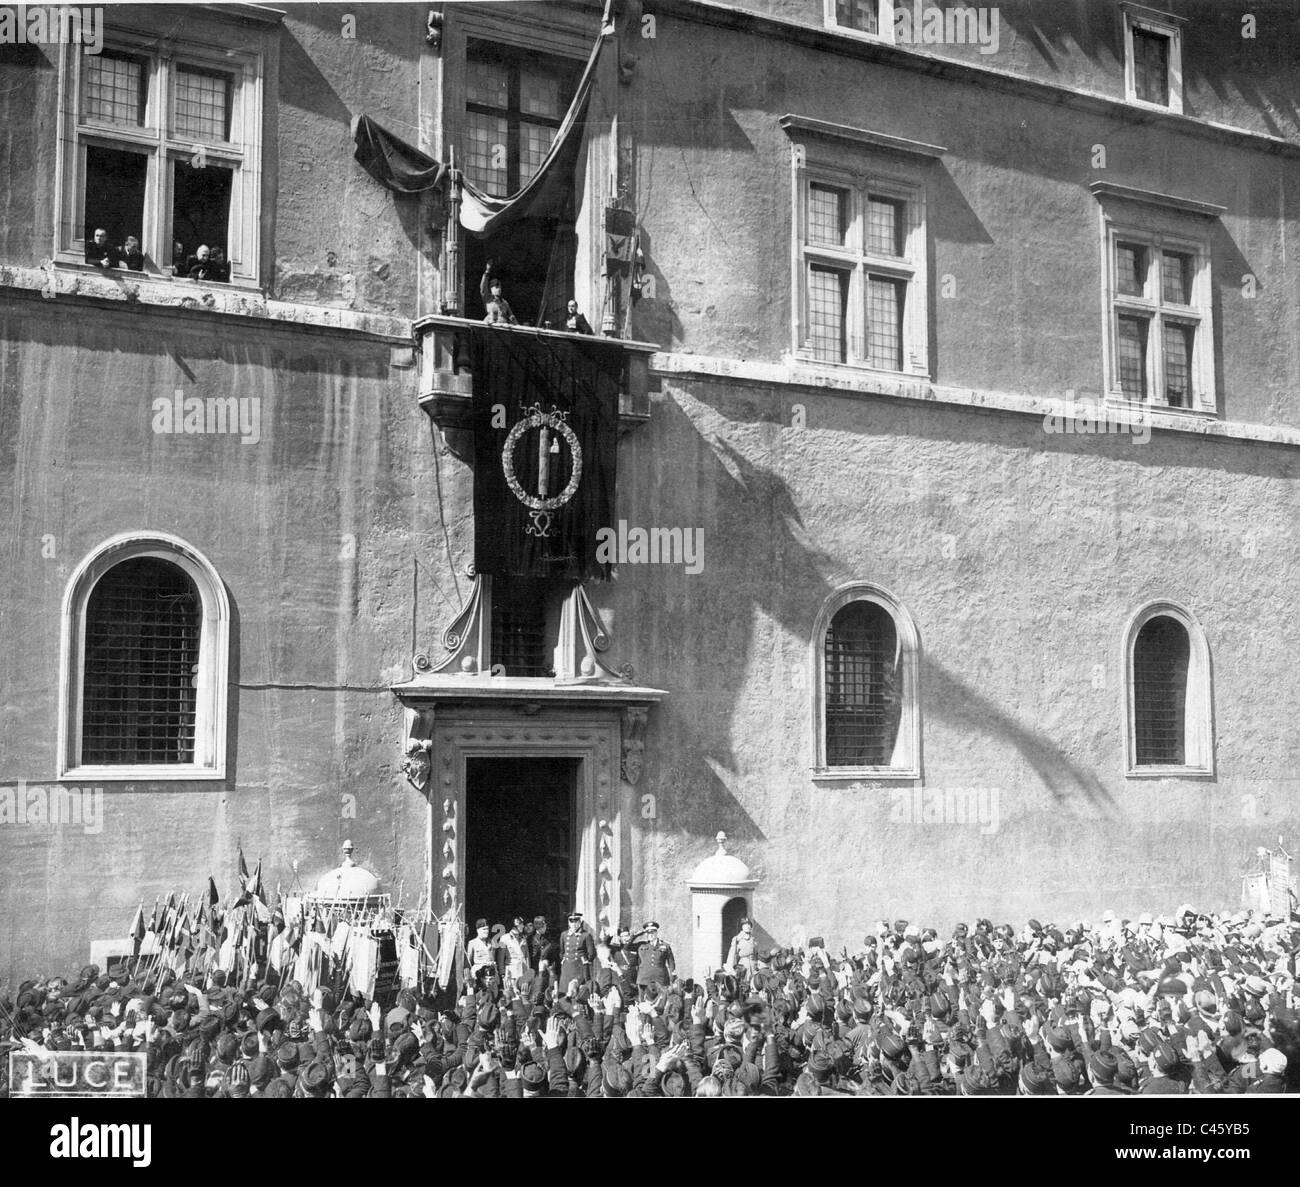 Benito Mussolini Balcony